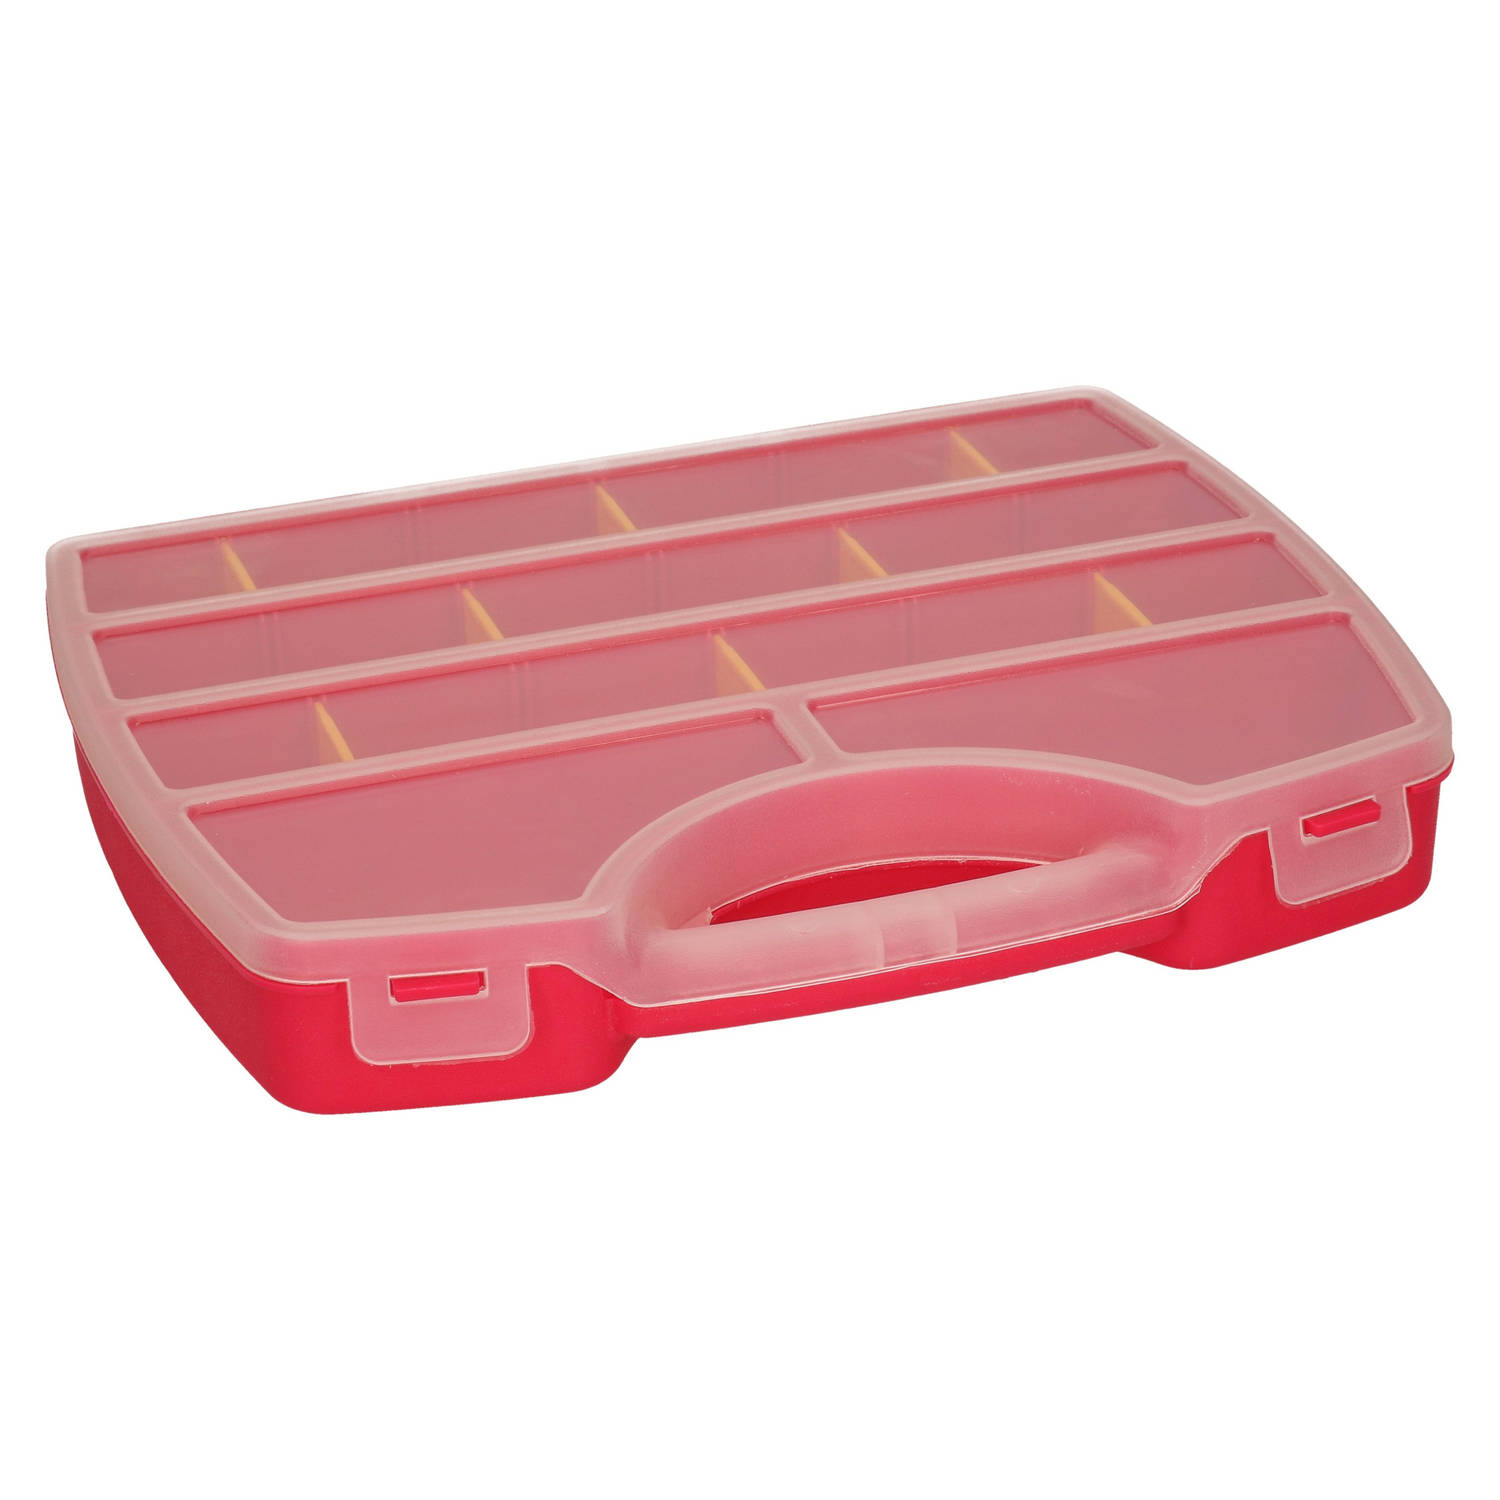 Plasticforte Opbergkoffertje-opbergdoos-sorteerbox 13-vaks kunststof roze 25 x 21 x 4 cm Opbergbox